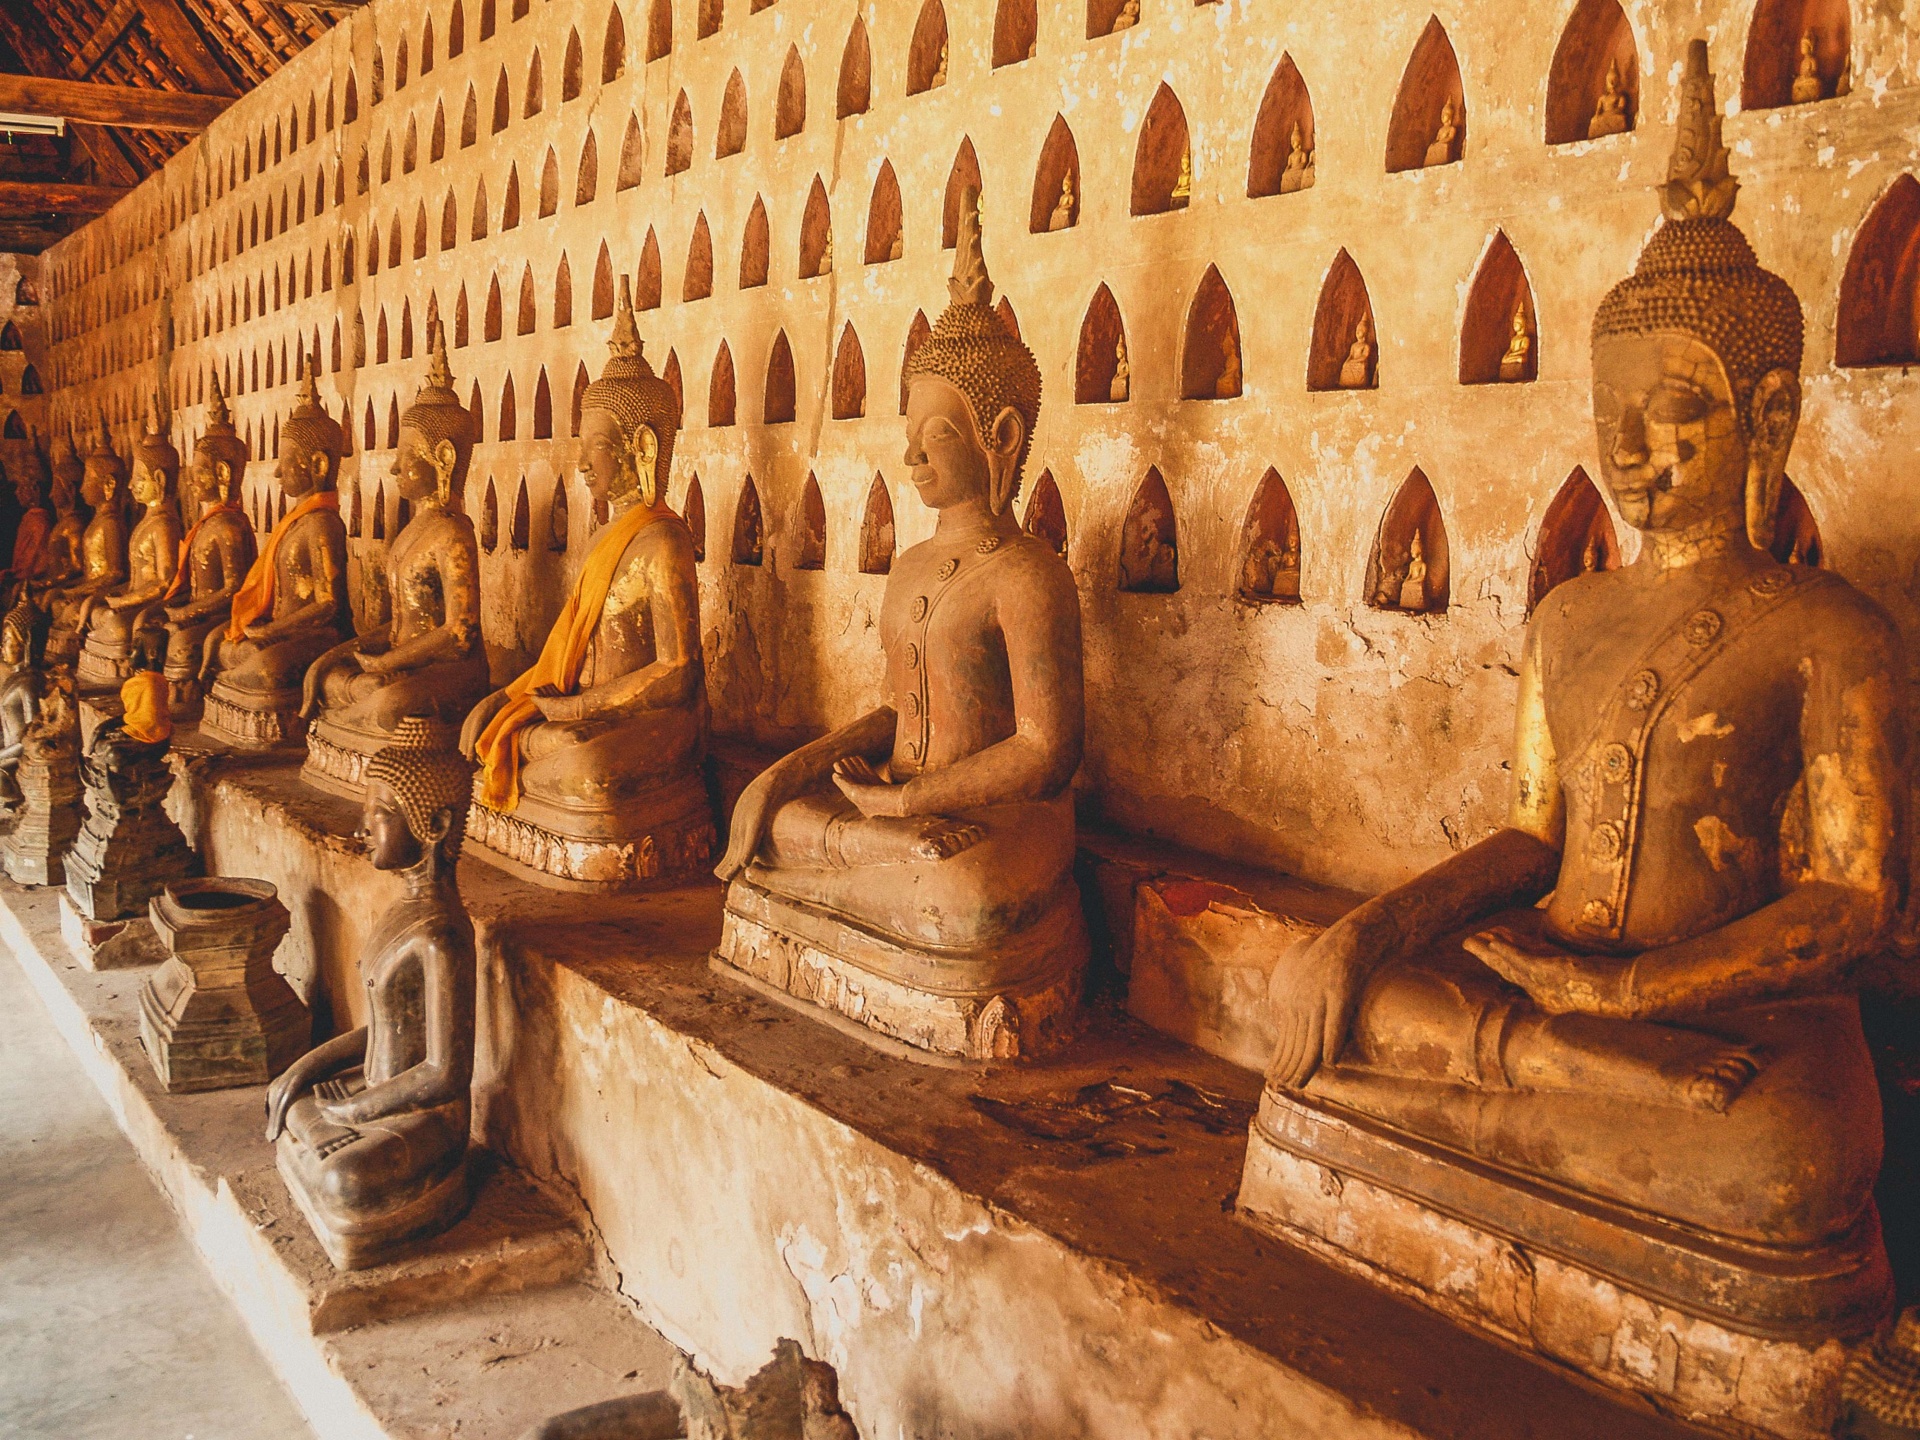 壁纸1024×768泰国佛像和寺院壁纸壁纸,文化之旅地理人文景观壁纸精选 第二辑壁纸图片-人文壁纸-人文图片素材-桌面壁纸